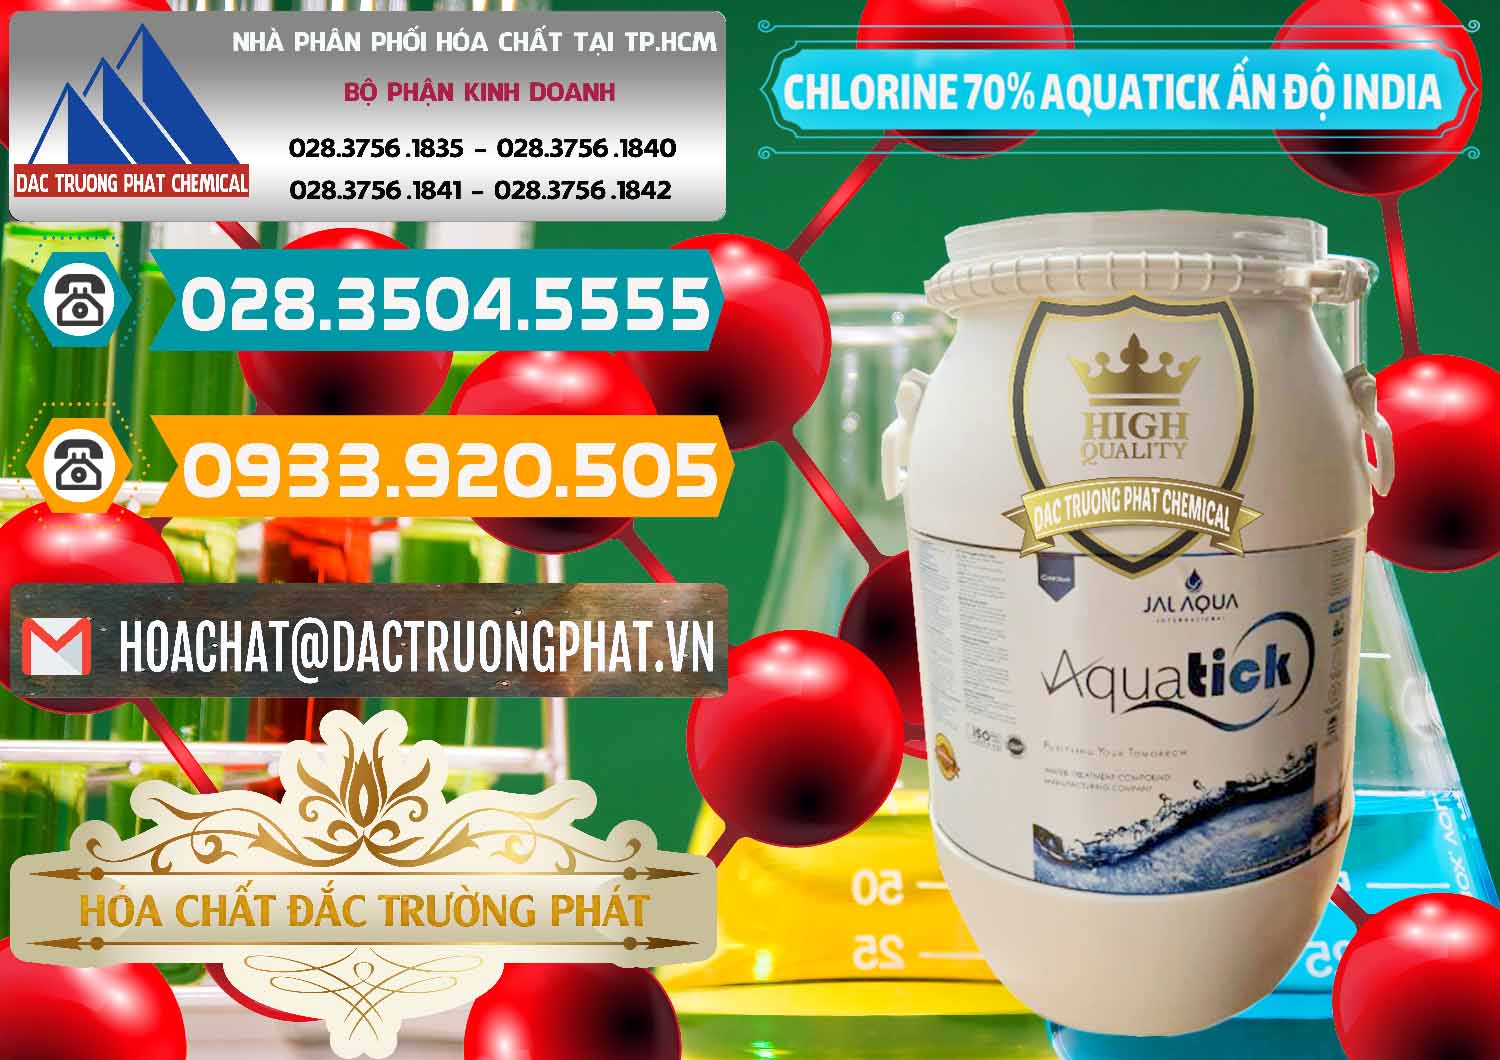 Chuyên cung cấp _ bán Chlorine – Clorin 70% Aquatick Jal Aqua Ấn Độ India - 0215 - Chuyên phân phối _ cung cấp hóa chất tại TP.HCM - congtyhoachat.vn